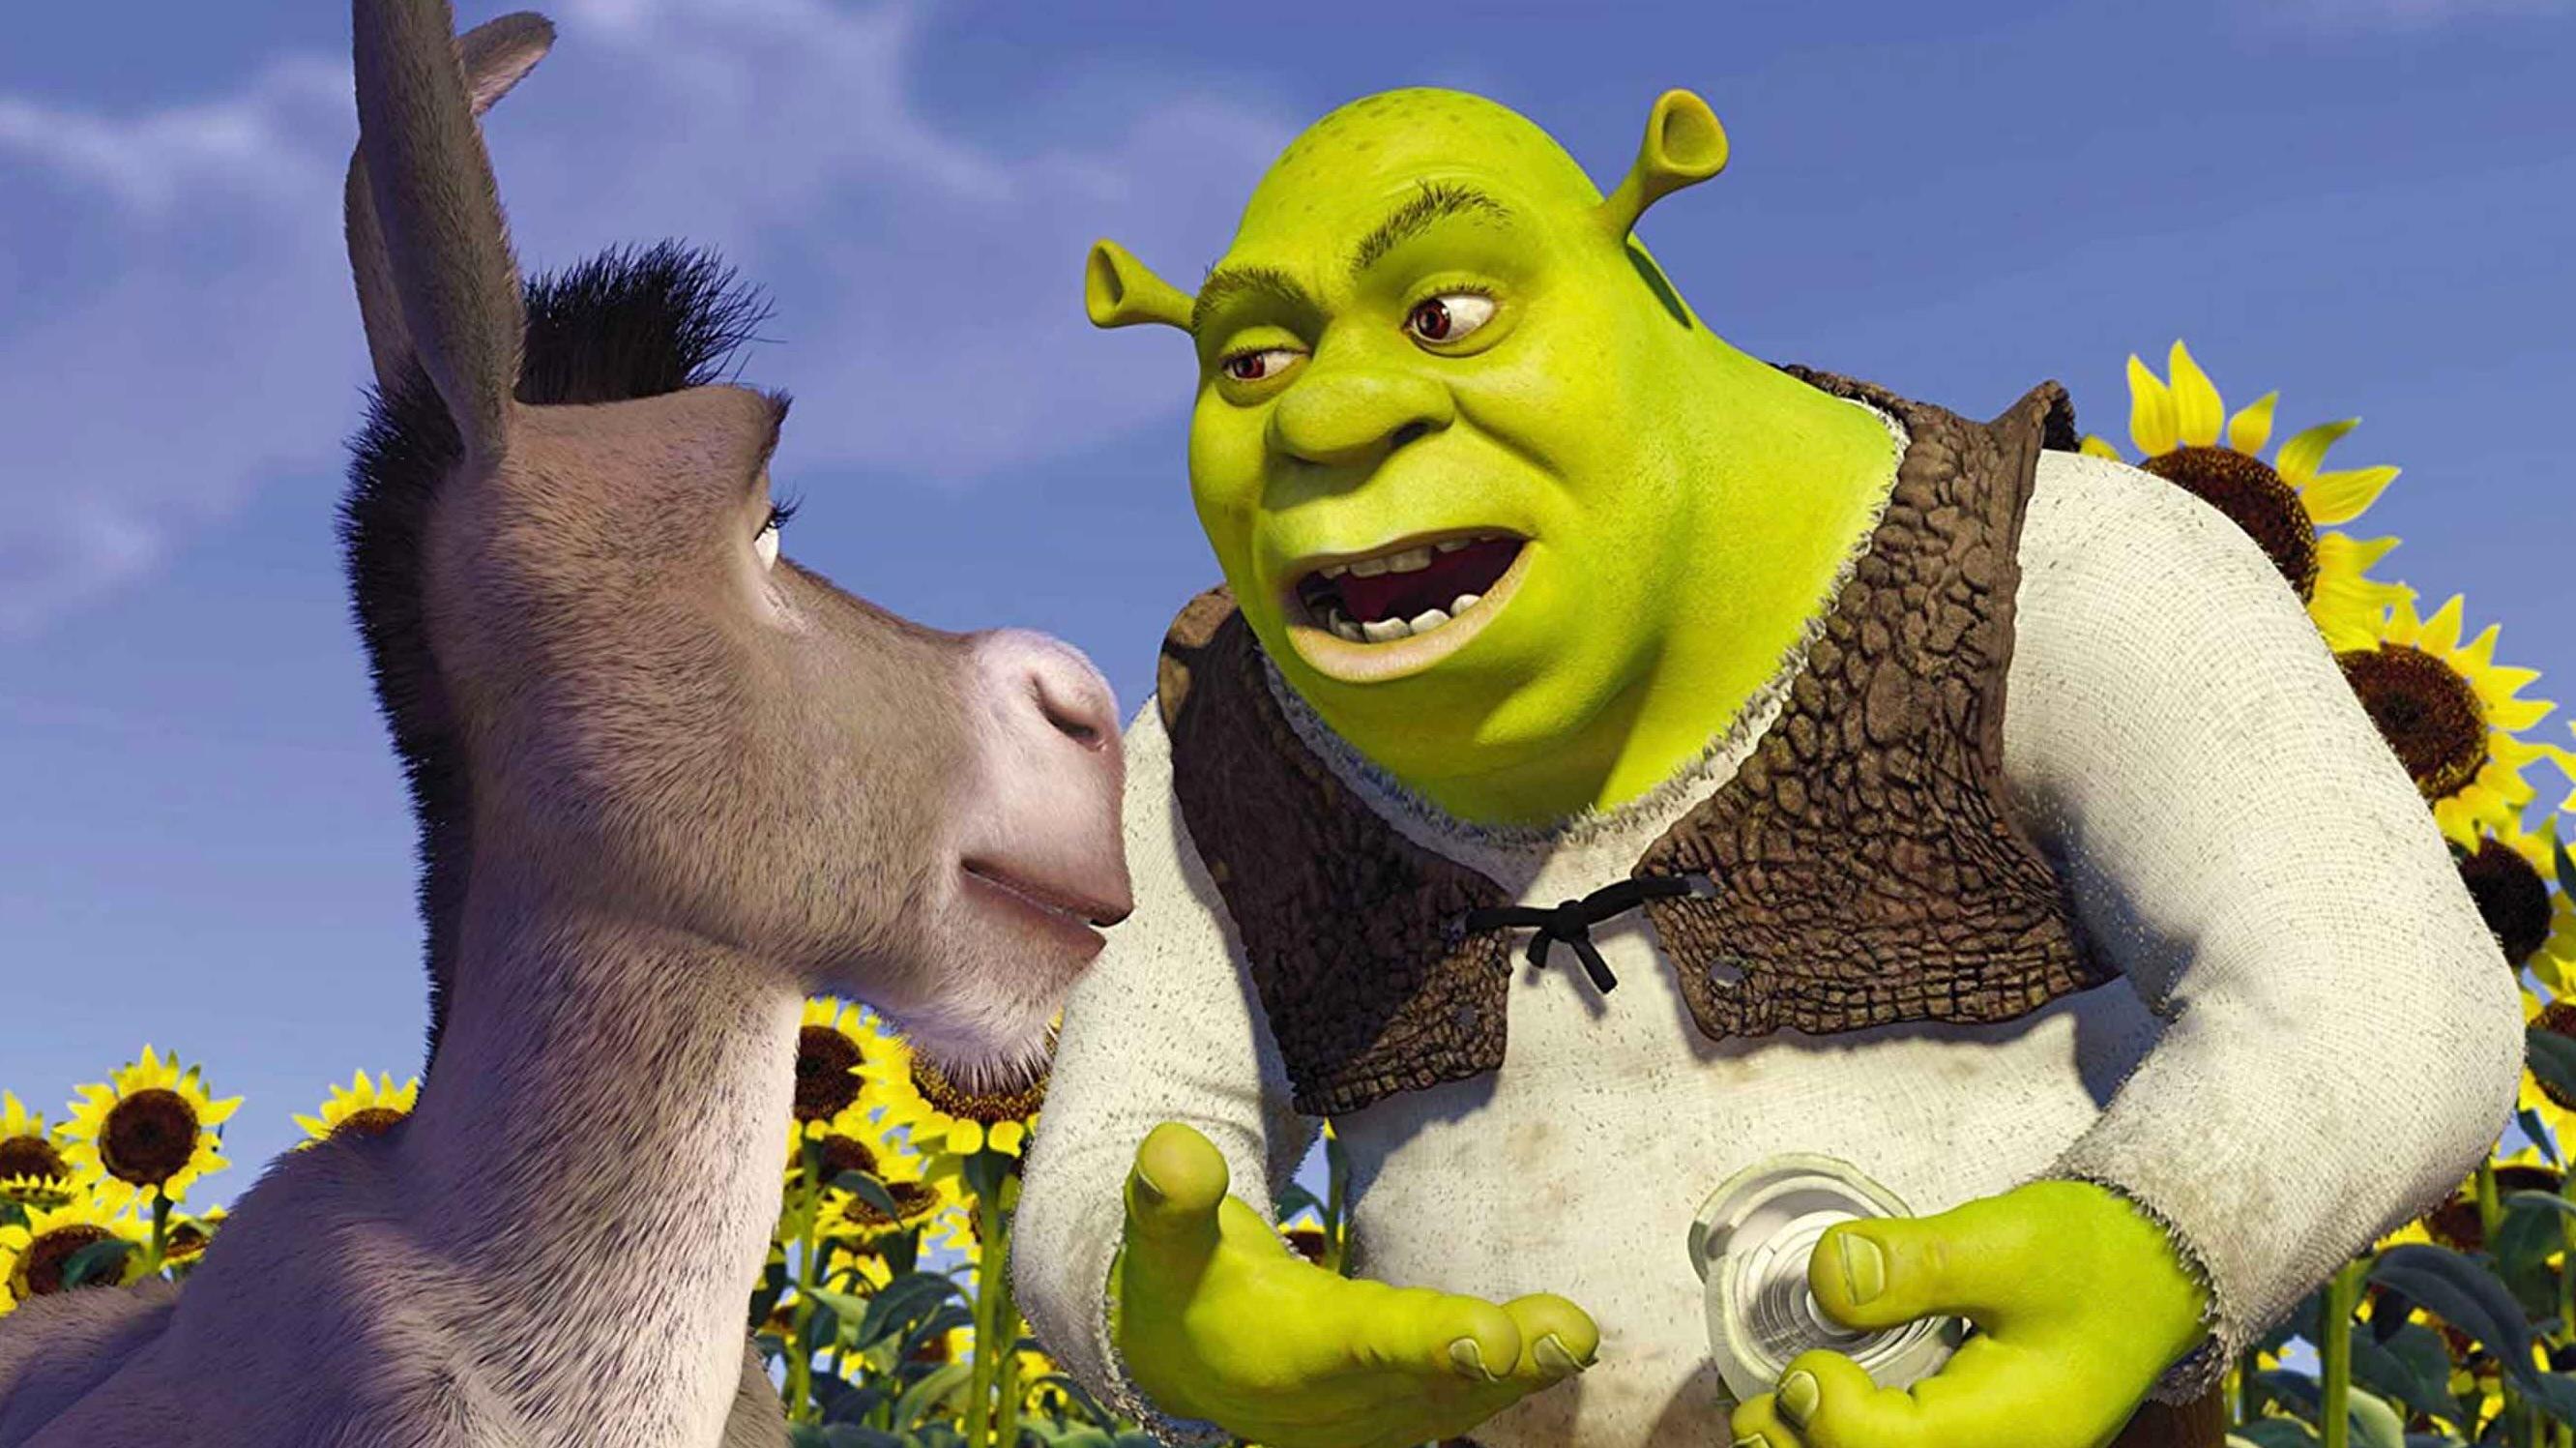 Donkey and Shrek in Shrek.